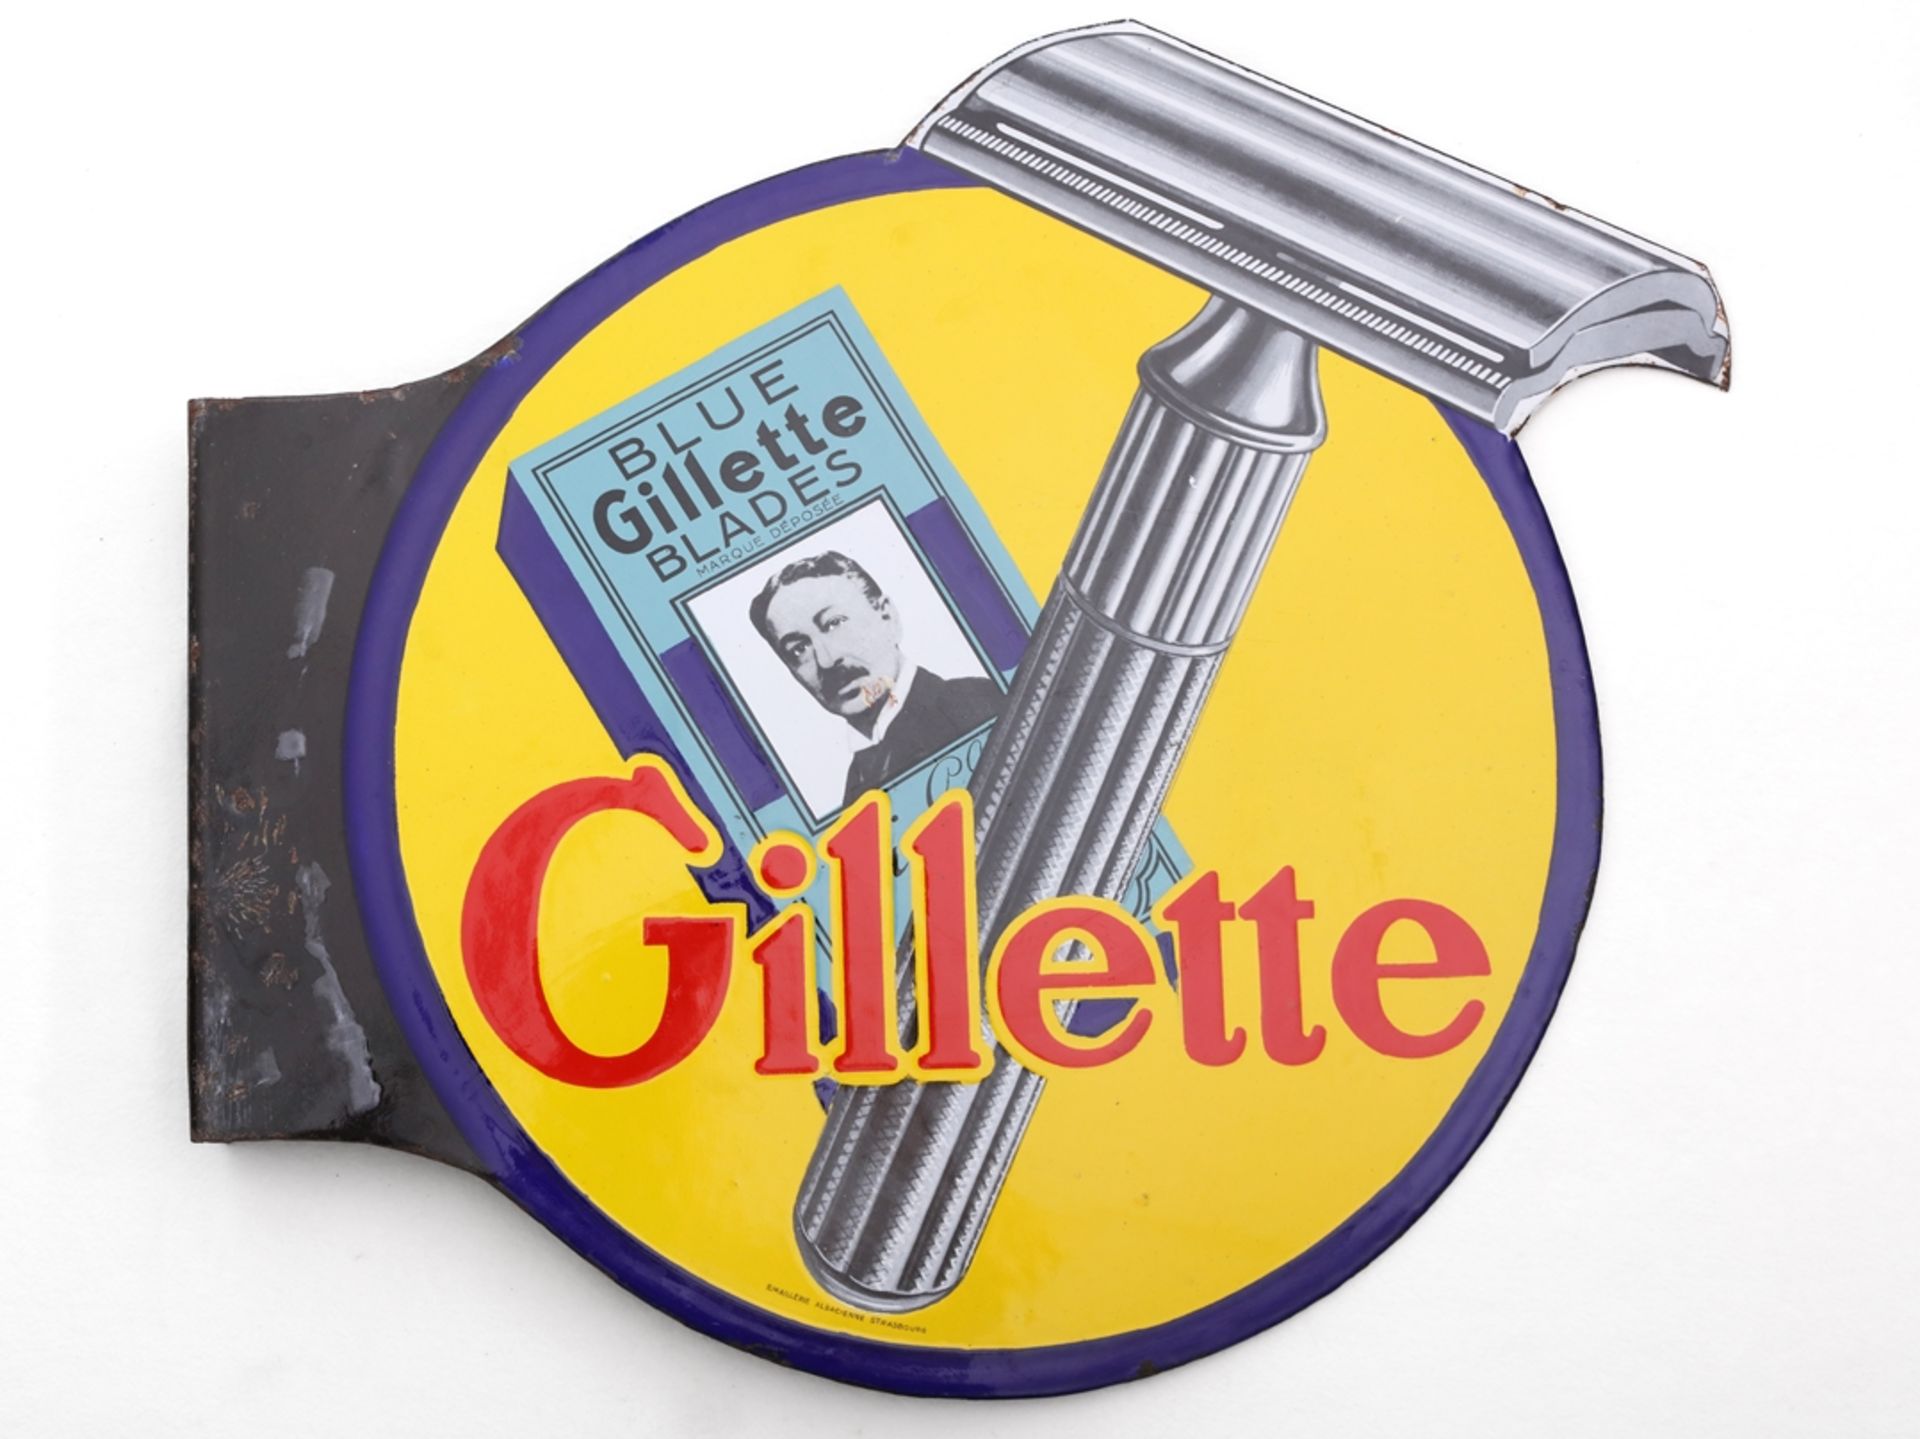 Gillette Blue Blades enamel sign, France, around 1930 - Image 6 of 6